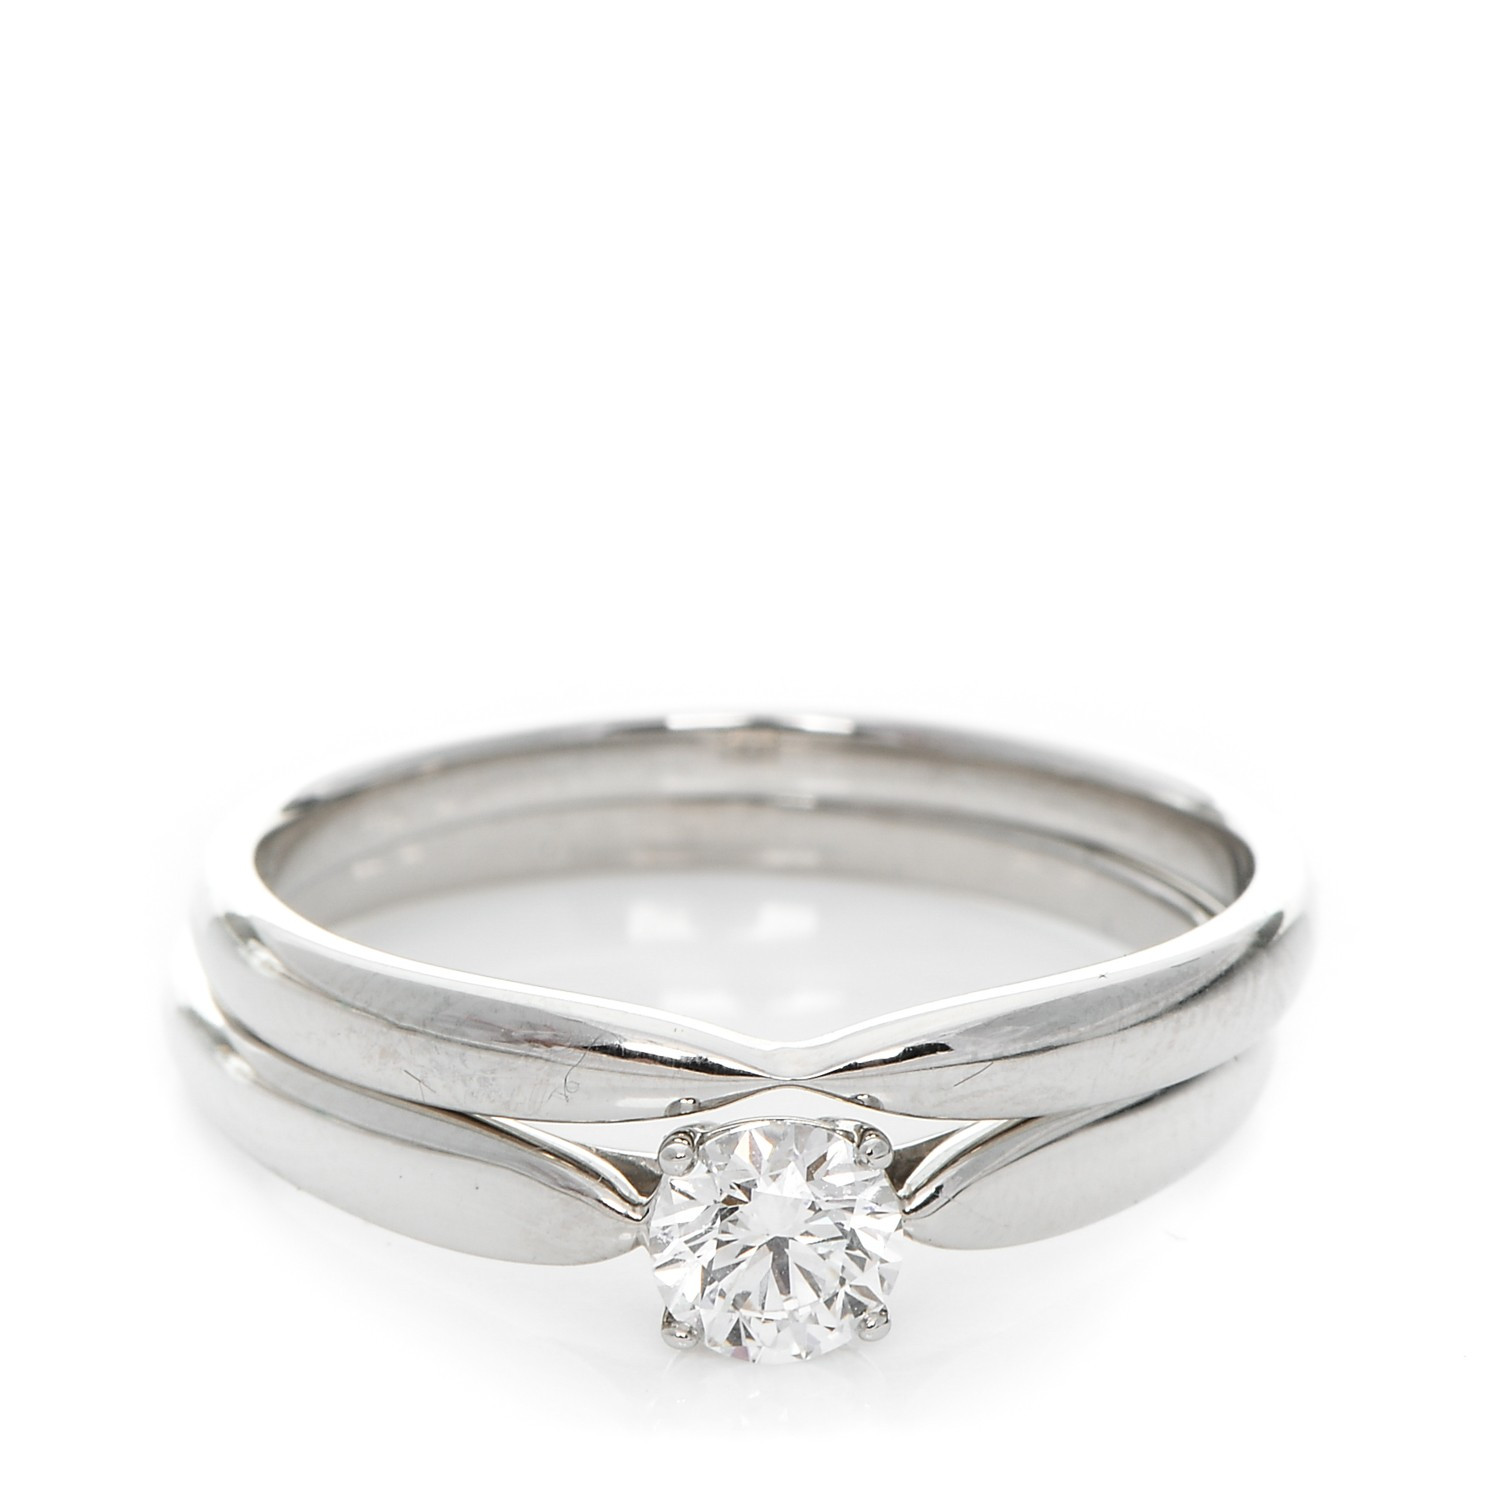 Tiffany Harmony Wedding Band
 TIFFANY Platinum Diamond Harmony Engagement Ring Wedding Band Set 63 10 25